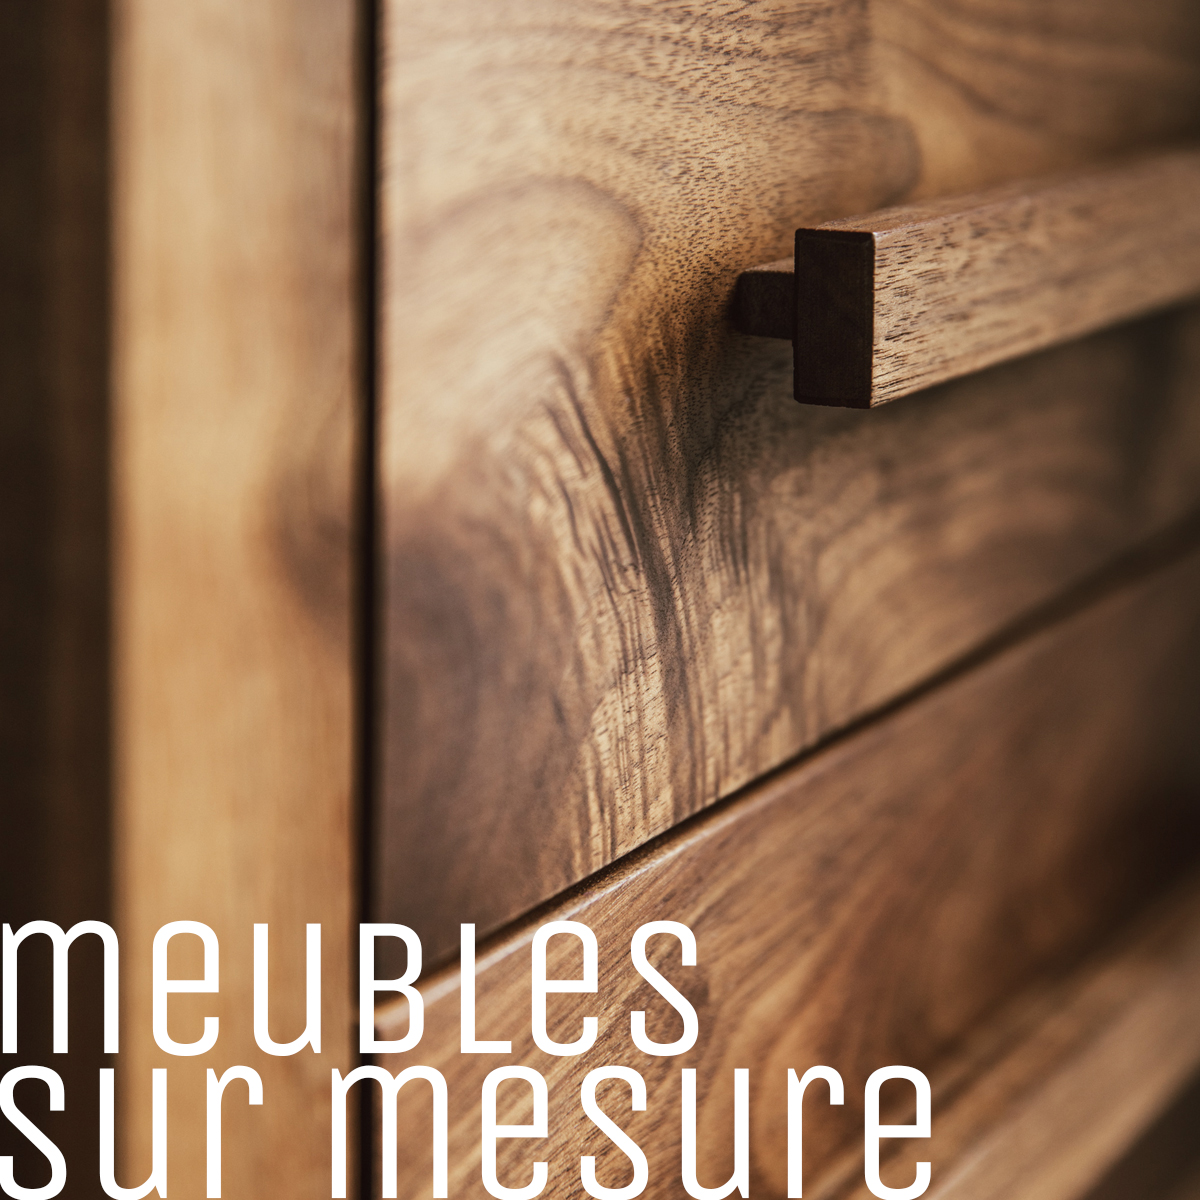 Découvrez notre ébénisterie artisanale québécoise spécialisée dans la création de meubles uniques, fondée en 2000 par un passionné du bois et de la cuisine.